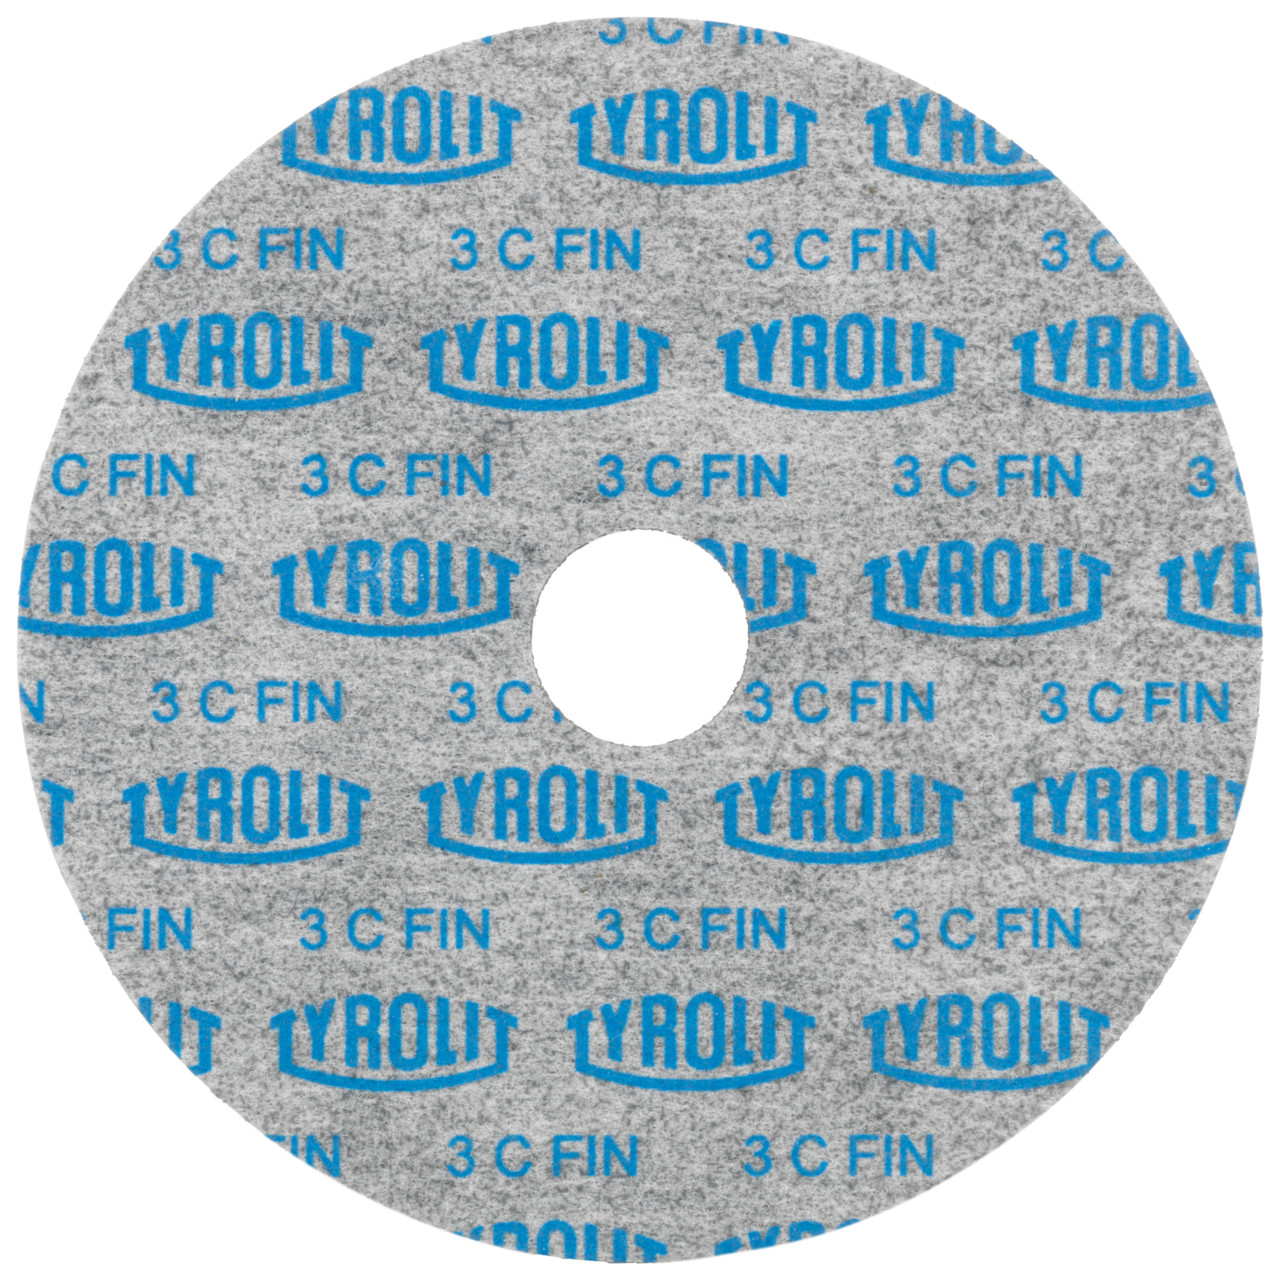 Tyrolit Compact disc pressati DxDxH 152x6x25.4 Utilizzabile universalmente, 2 C FEIN, forma: 1, Art. 34190275